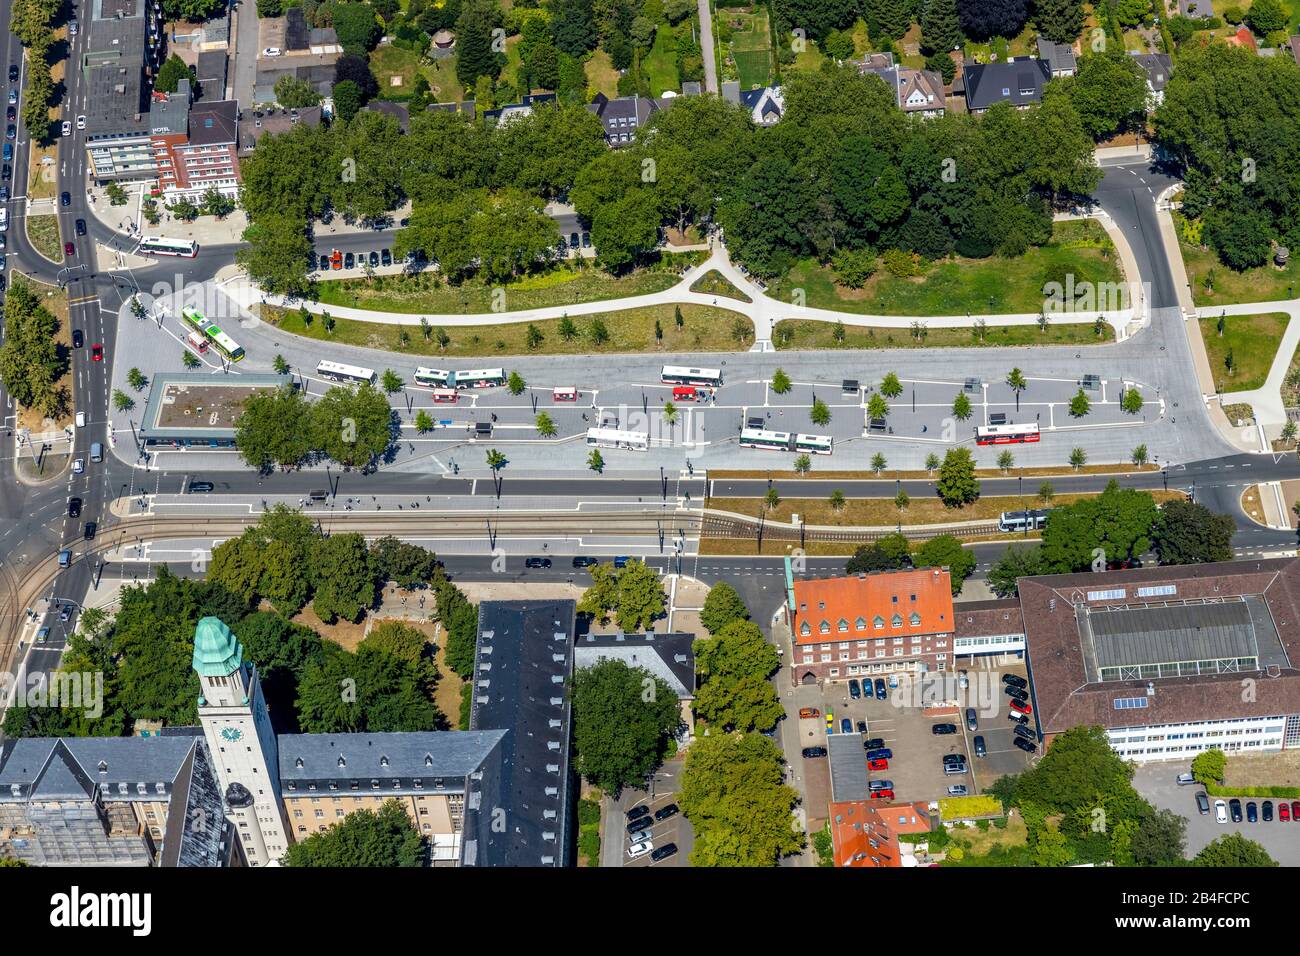 Luftbild des zentralen Busbahnhofs ZOB in Gelsenkirchen-Buer mit Busbahnsteigen und geänderter Verkehrssteuerung in Gelsenkirchen im Ruhrgebiet in Nordrhein-Westfalen in Deutschland, Gelsenkirchen, Ruhrgebiet, Nordrhein-Westfalen, Deutschland, Stockfoto